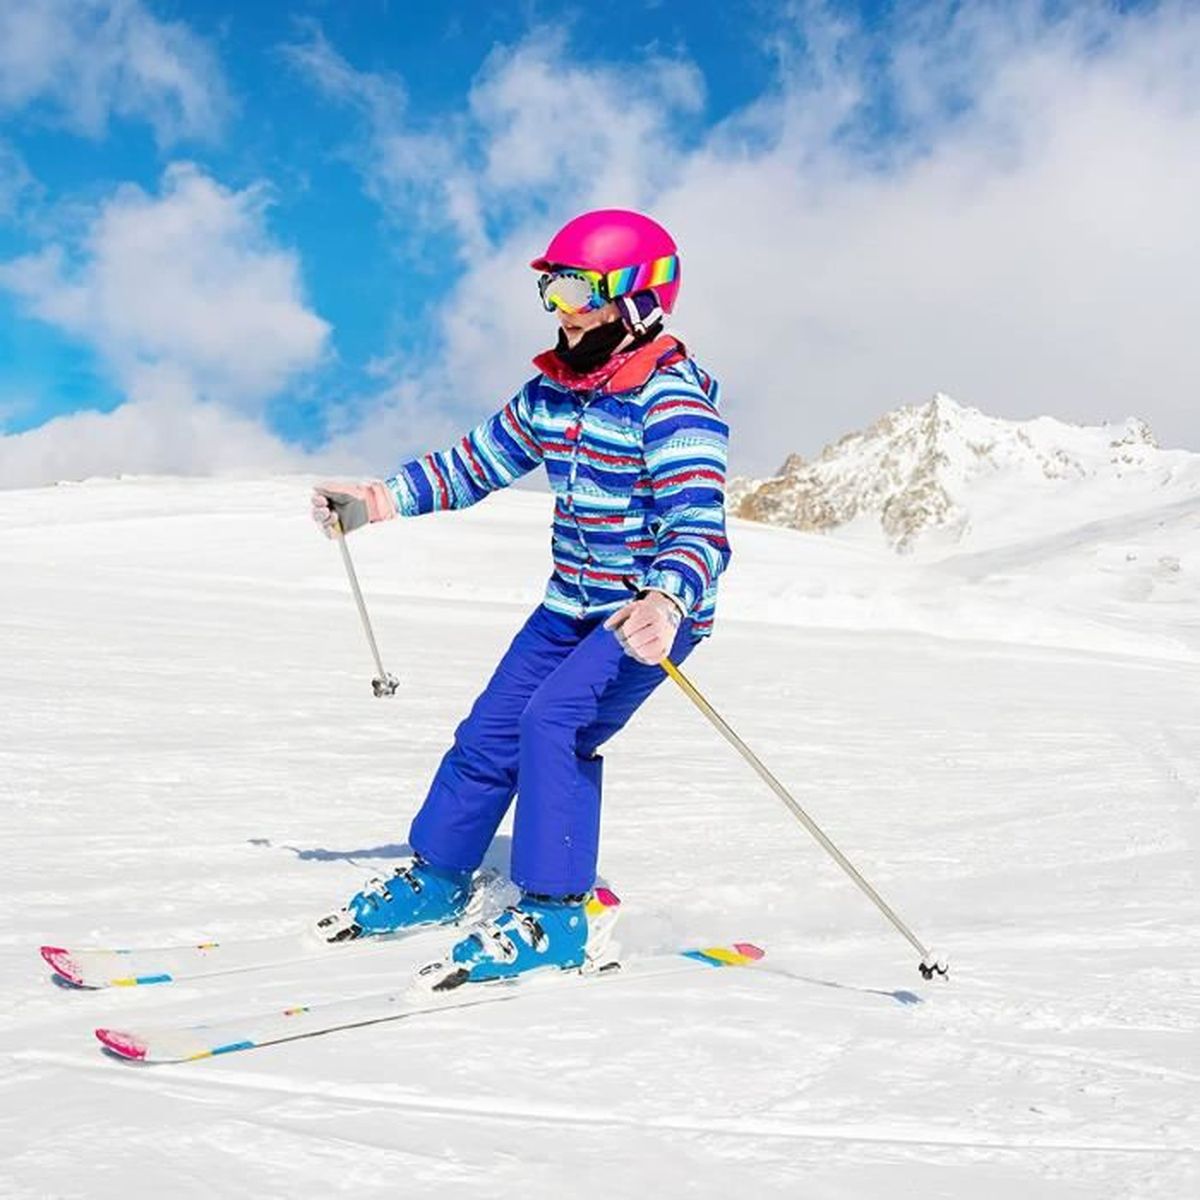 Gants Ski Enfant,Moufles de Ski Fille Garçon,Moufles Enfant,Gants de Ski pour Enfants,avec Fermeture Velcro,Chaud et Coupe-Vent,Gant Enfant pour Ski Course à Pied Cyclisme